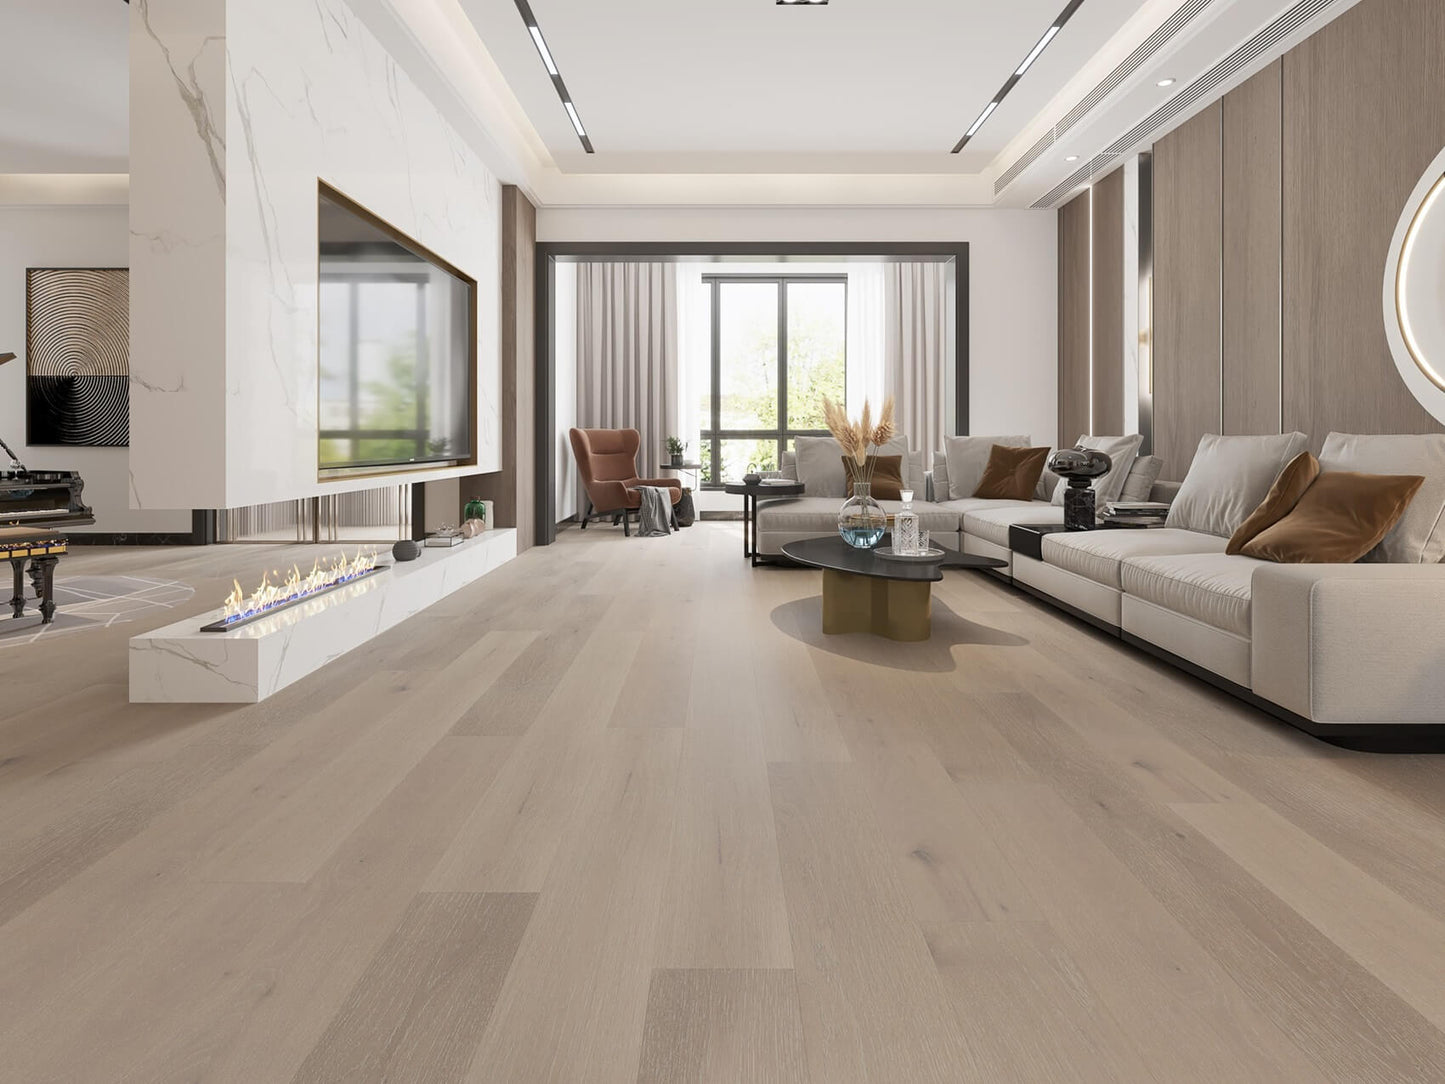 Oak snow white hardwood flooring in lounge room setting